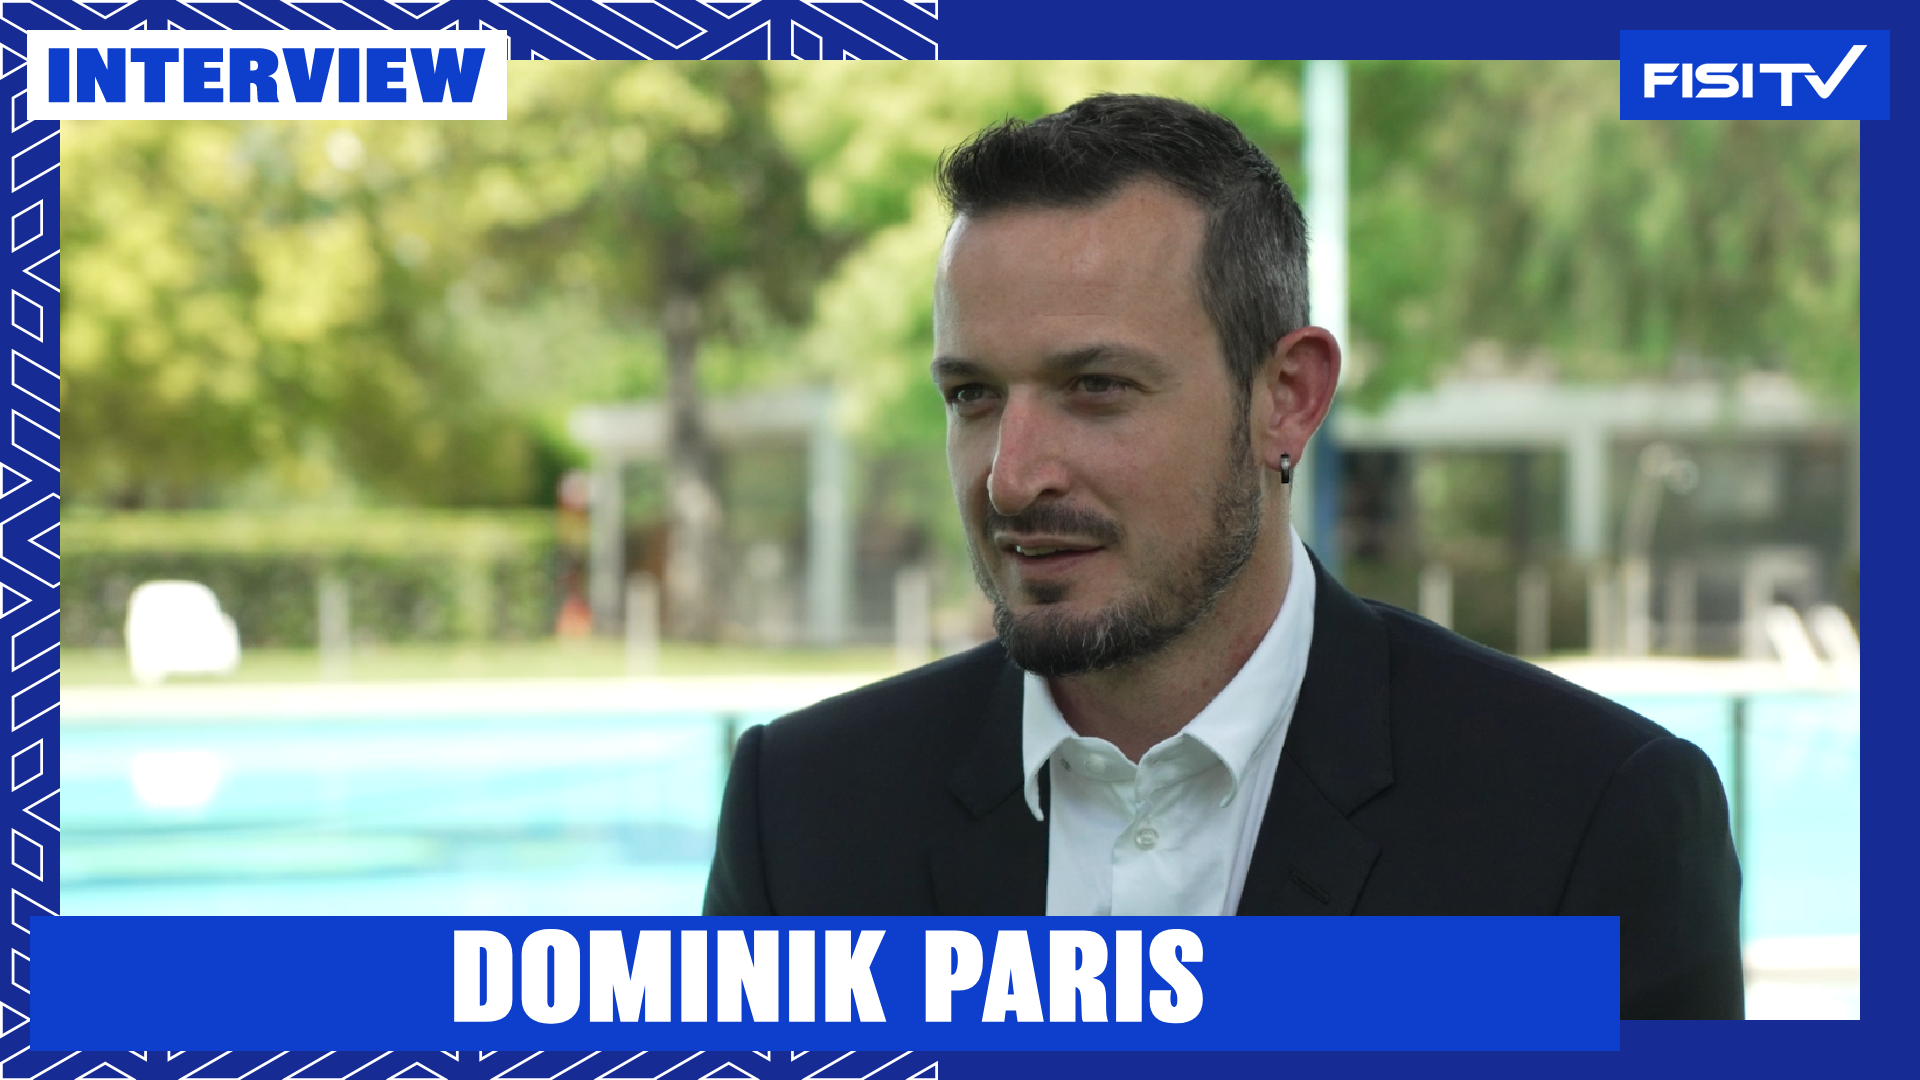 Dominik Paris | “Si cerca di migliorare ancora e di fare sempre più risultati” | FISI TV